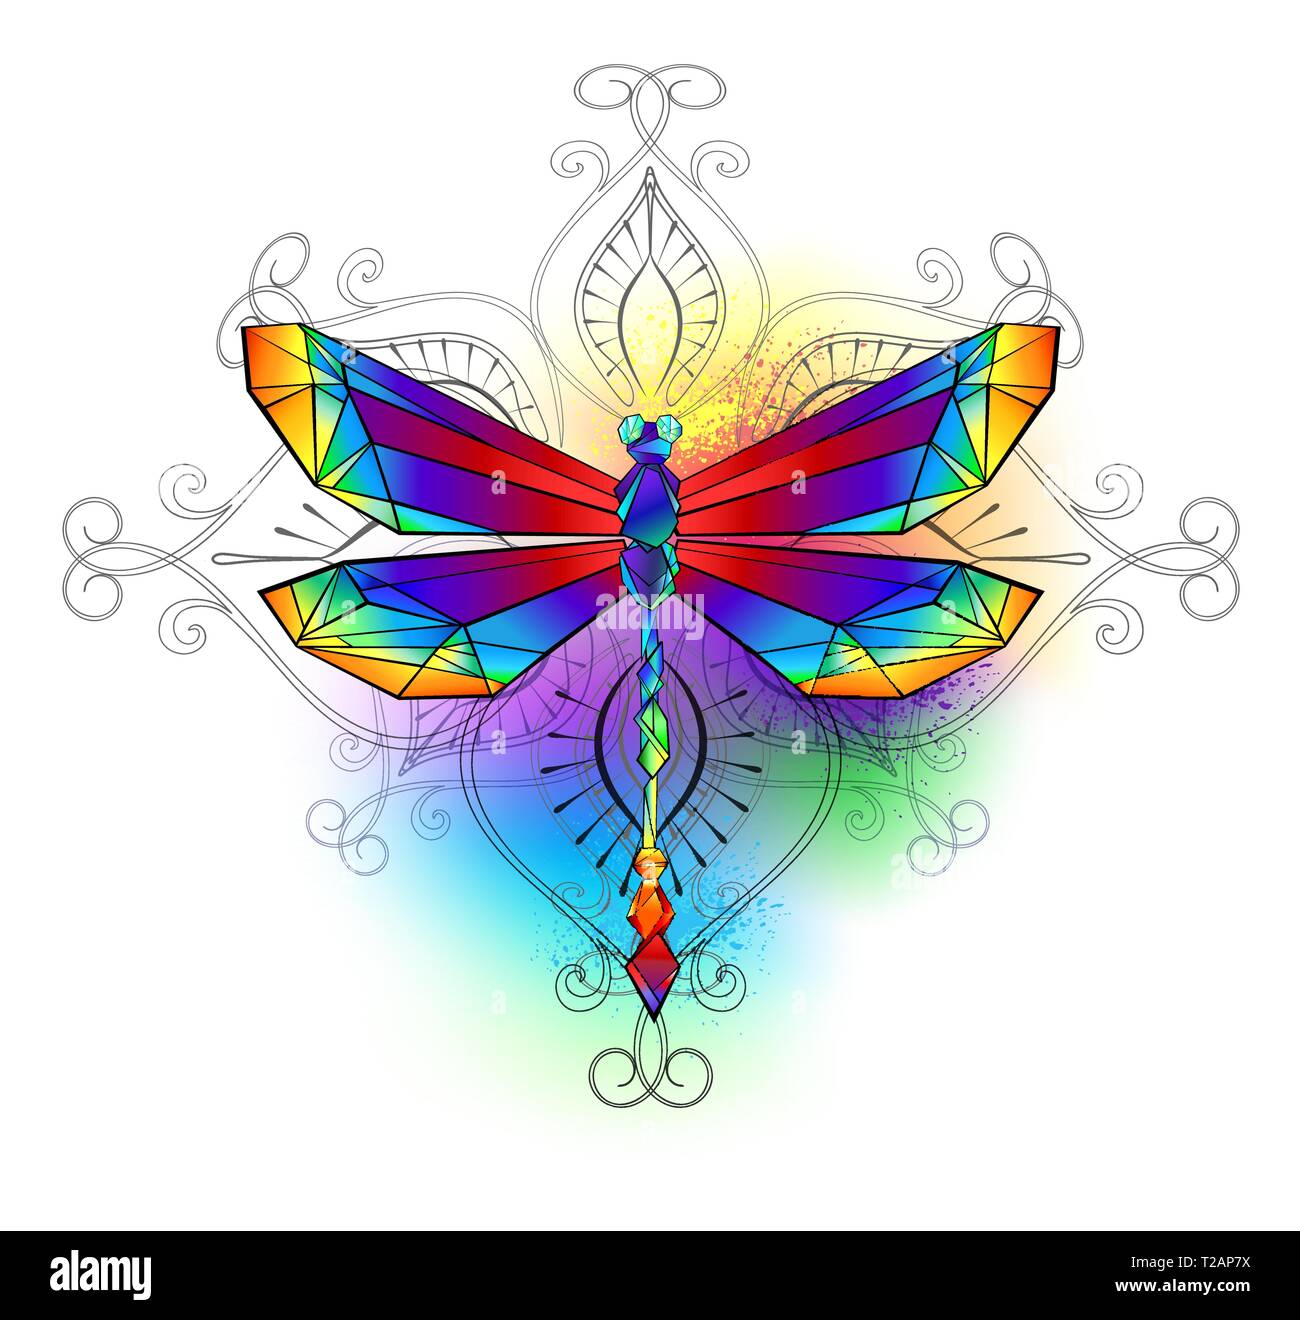 Helle, Regenbogen, polygonalen Libelle auf weißem Hintergrund, mit Wasserfarben gemalt. Stock Vektor